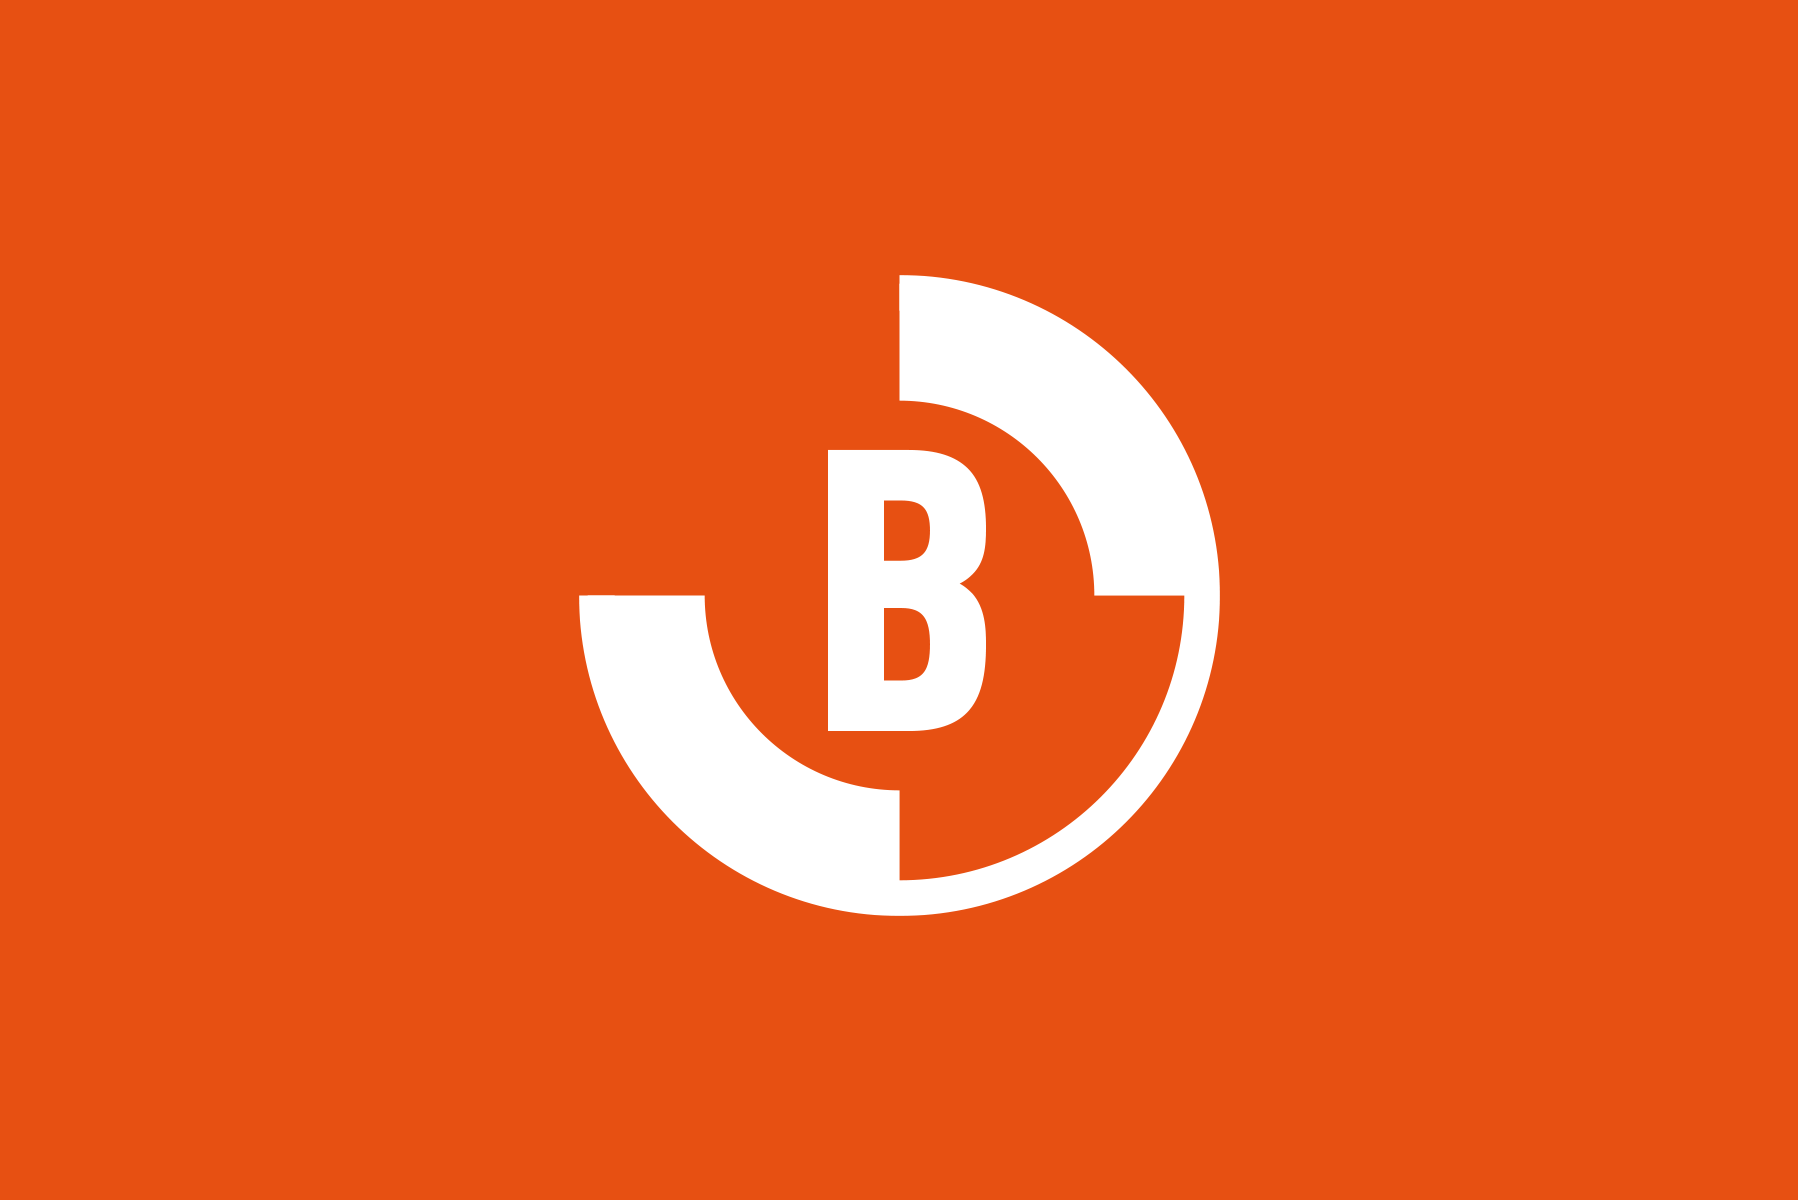 Entwurf für ein Logo der Initiative zur Rettung des Alten Tramdepots Burgernziel Bern